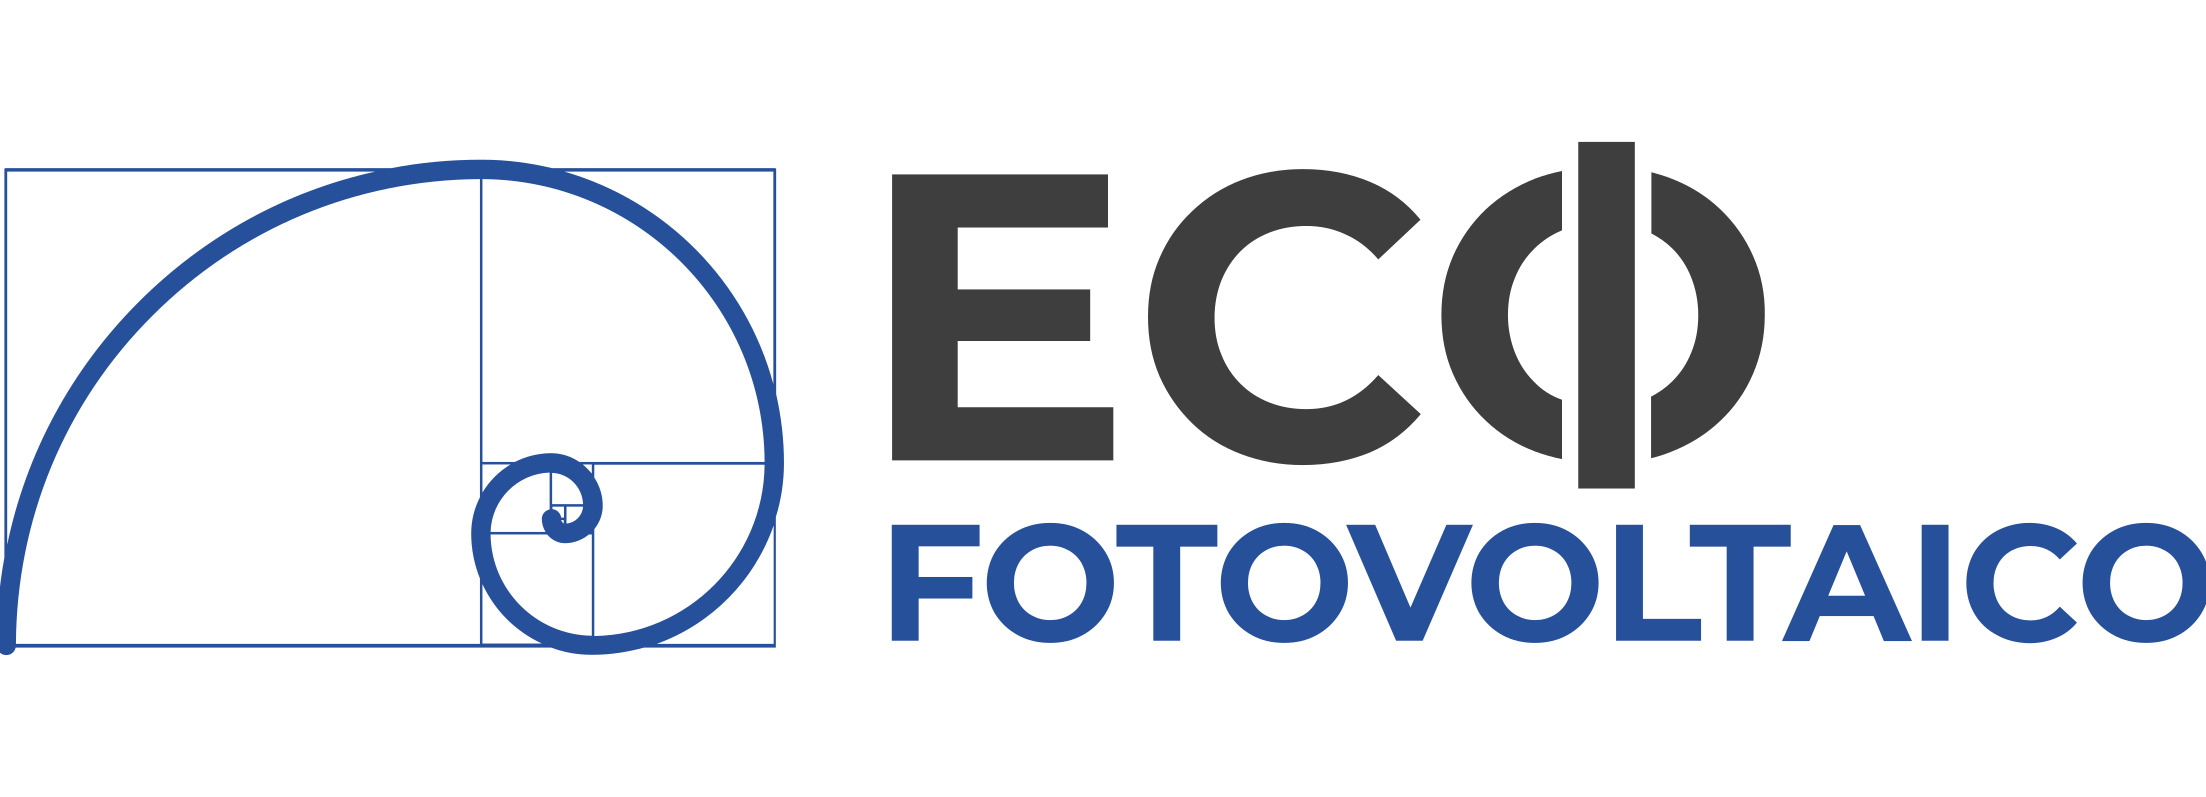 Ecofotovoltaico